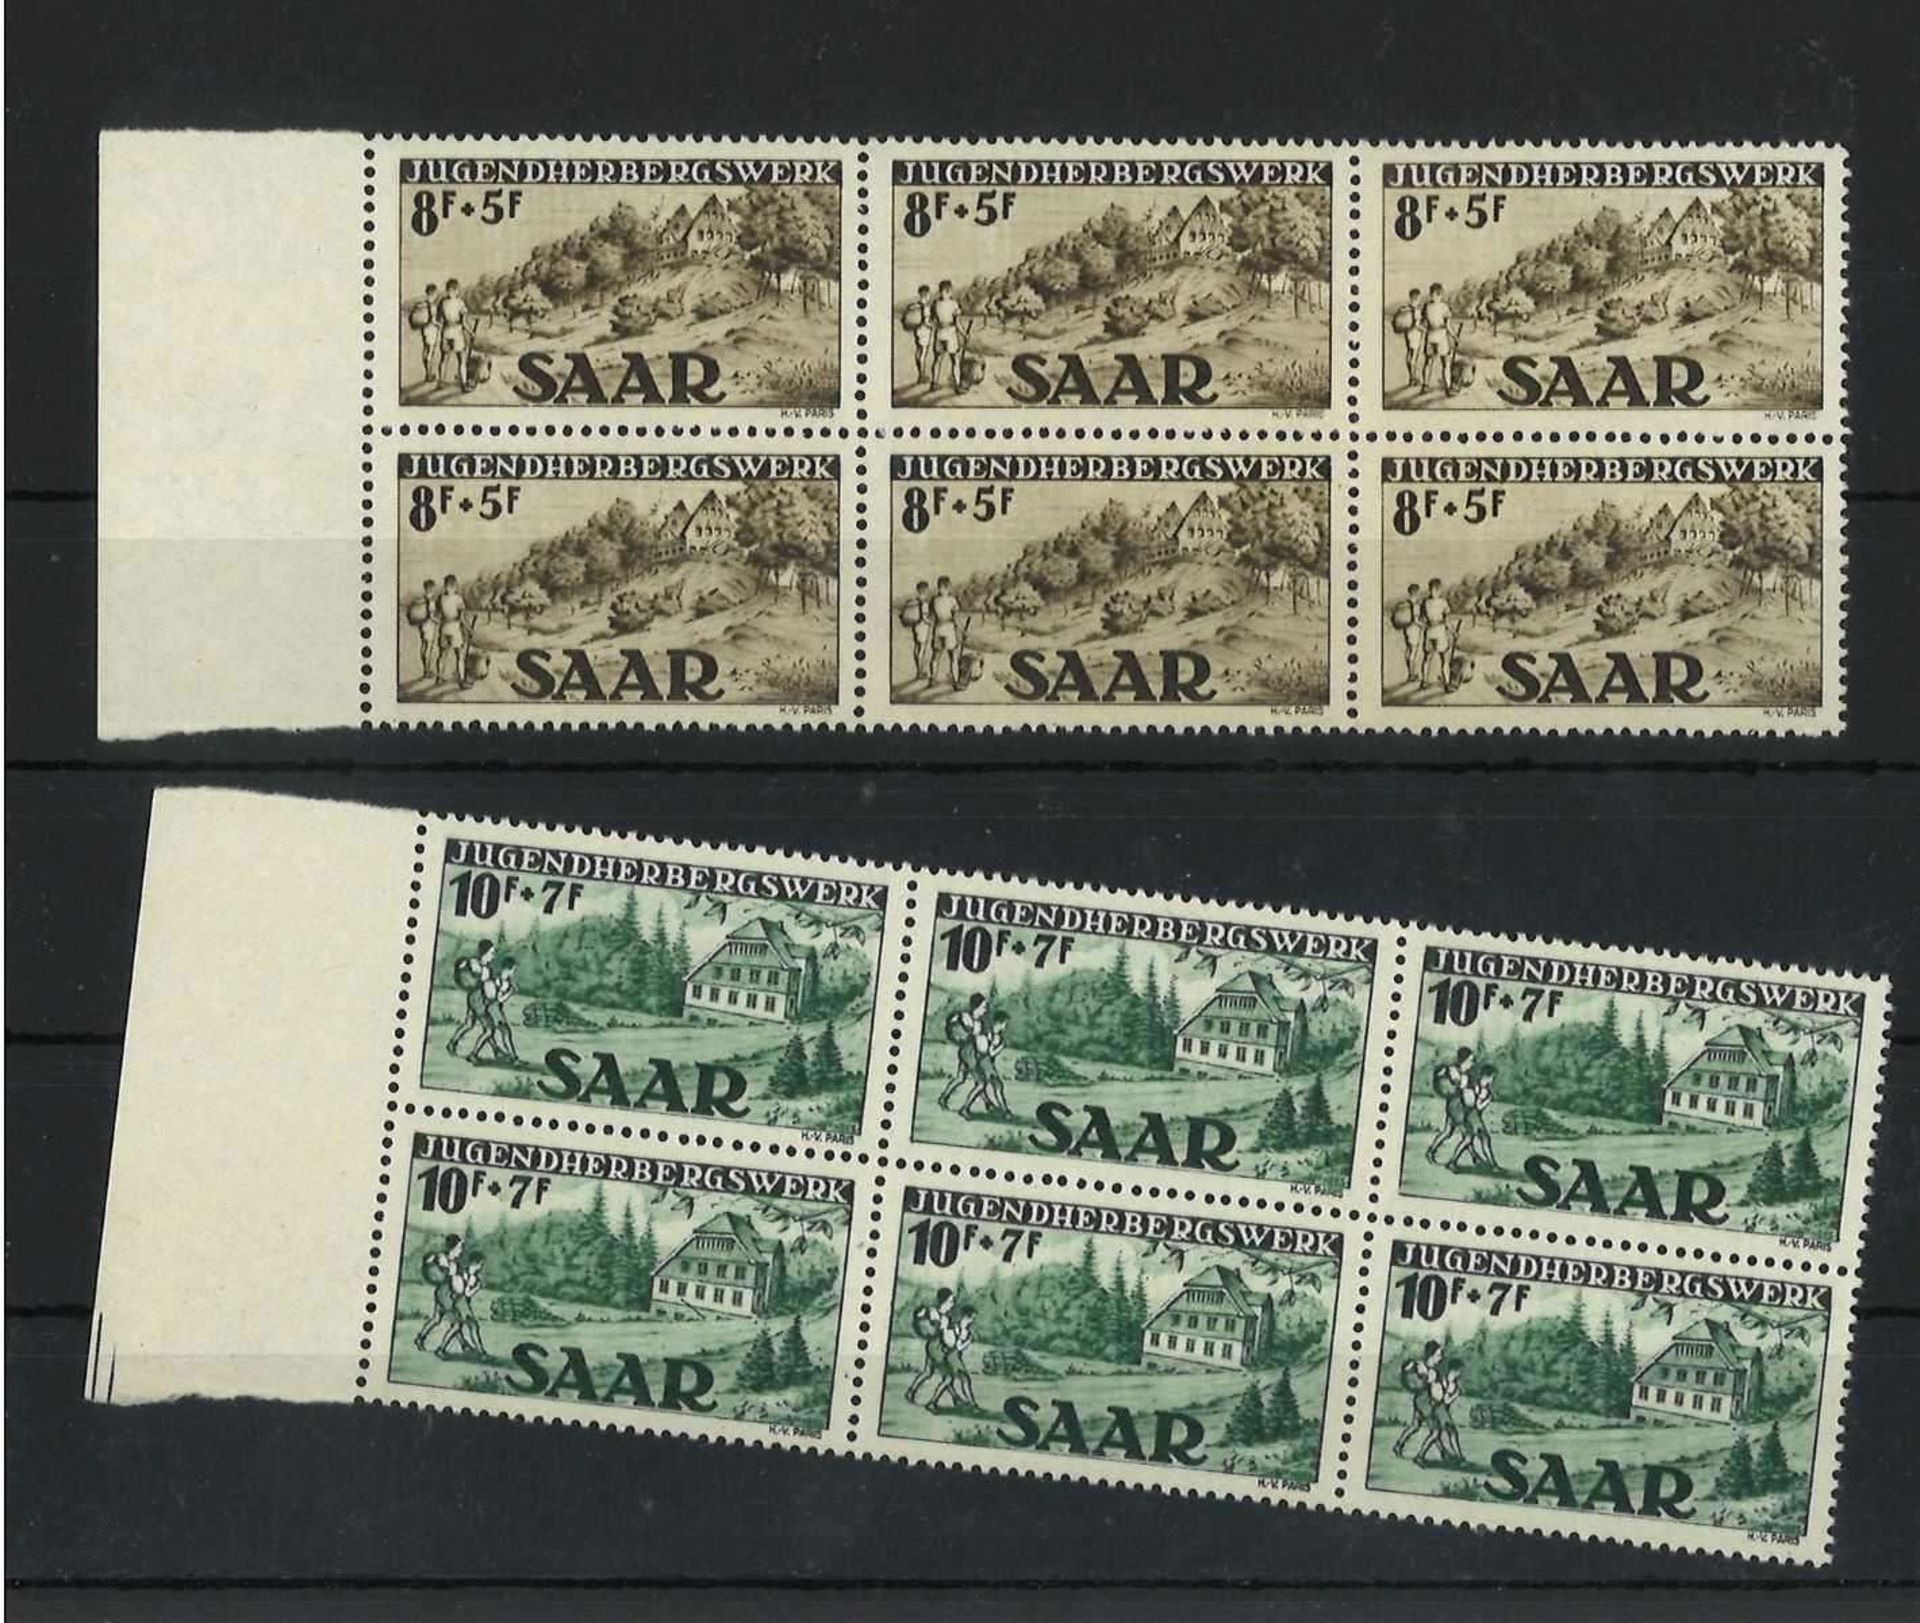 Saarland, 1949, MI 262I - 263II, 6er Block, Jugendherbergswerk, postfrischSaarland, 1949, MI